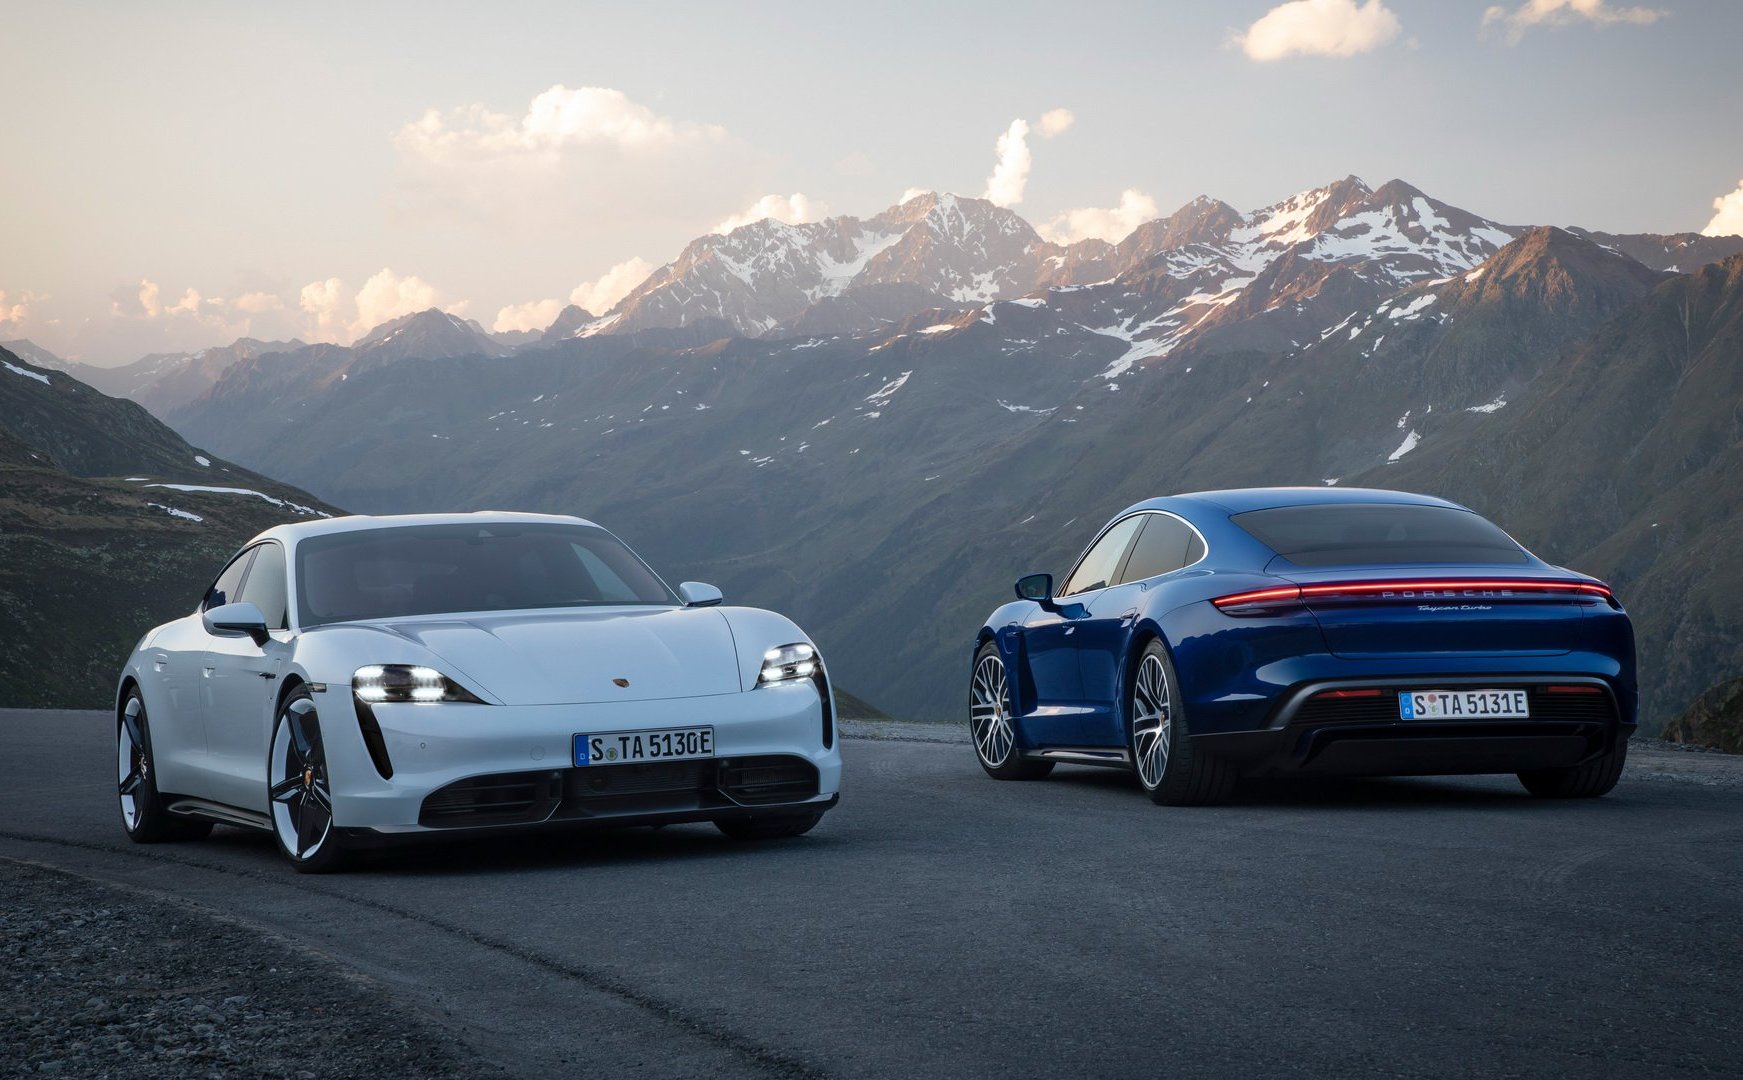 Porsche chính thức ra mắt Taycan, xe thể thao 4 cửa chạy điện, mạnh nhất 750HP, giá từ 153.310 USD